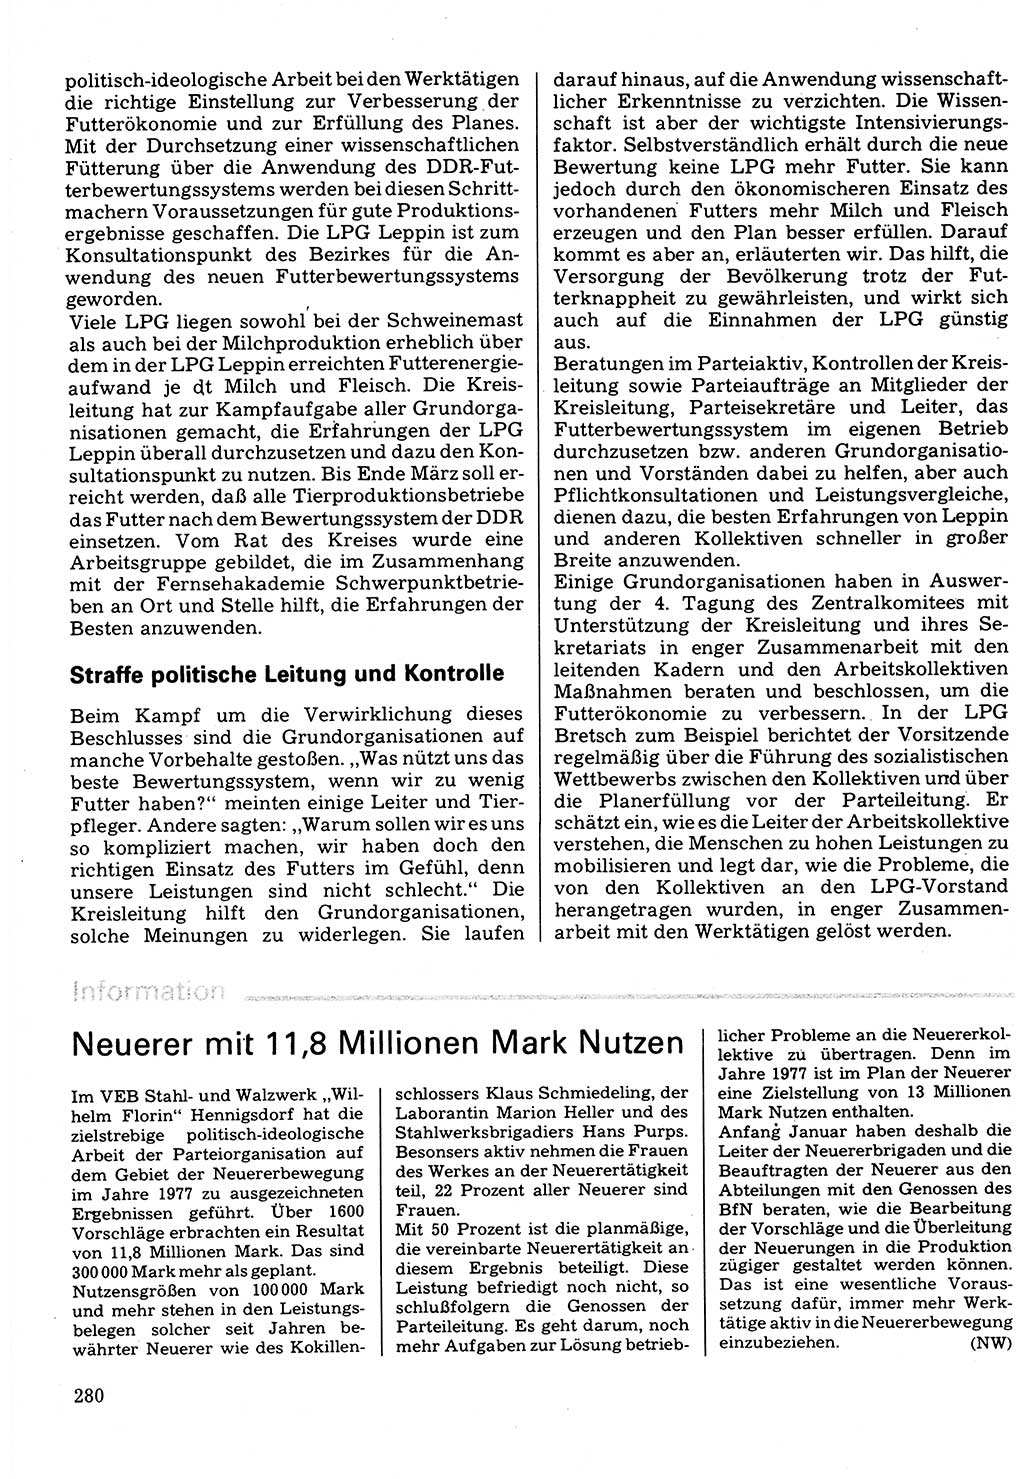 Neuer Weg (NW), Organ des Zentralkomitees (ZK) der SED (Sozialistische Einheitspartei Deutschlands) für Fragen des Parteilebens, 32. Jahrgang [Deutsche Demokratische Republik (DDR)] 1977, Seite 280 (NW ZK SED DDR 1977, S. 280)